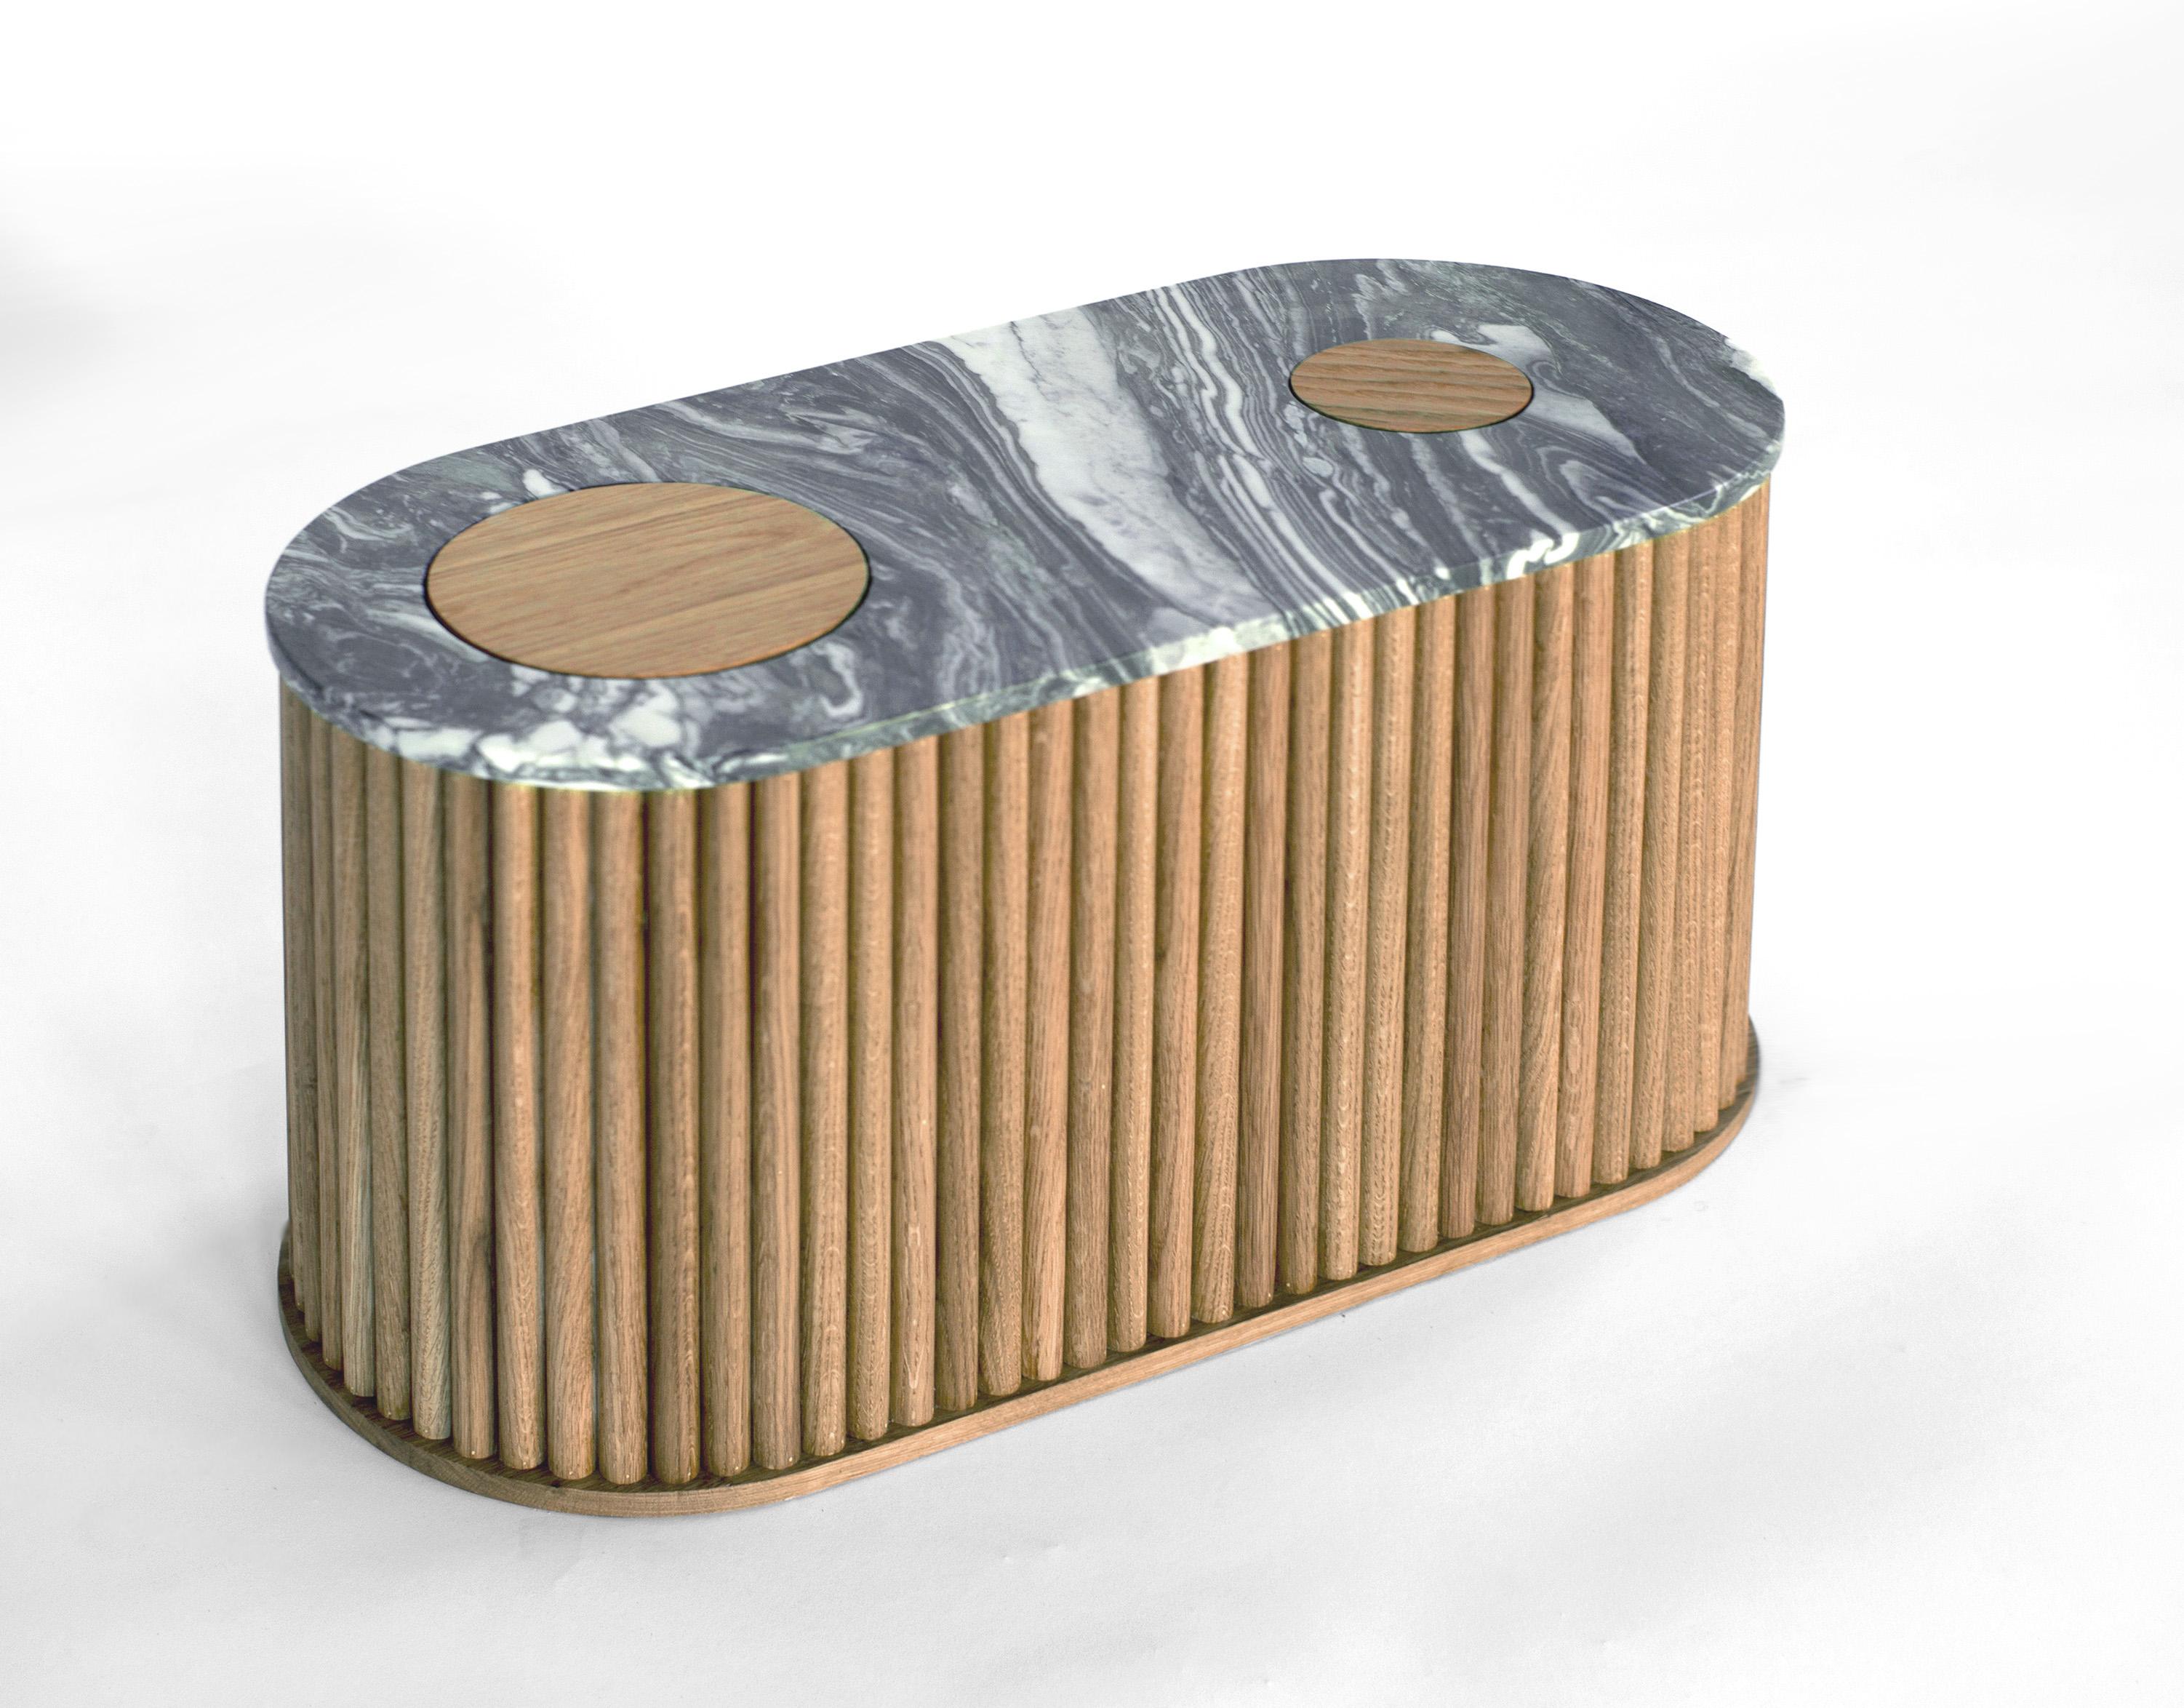 Cette table de chevet est disponible individuellement ou en set de deux. Son plateau est arrondi de chaque côté avec des découpes circulaires insérées révélant la matérialité de sa base en bois. La base est enveloppée d'un tambour en chêne blanc